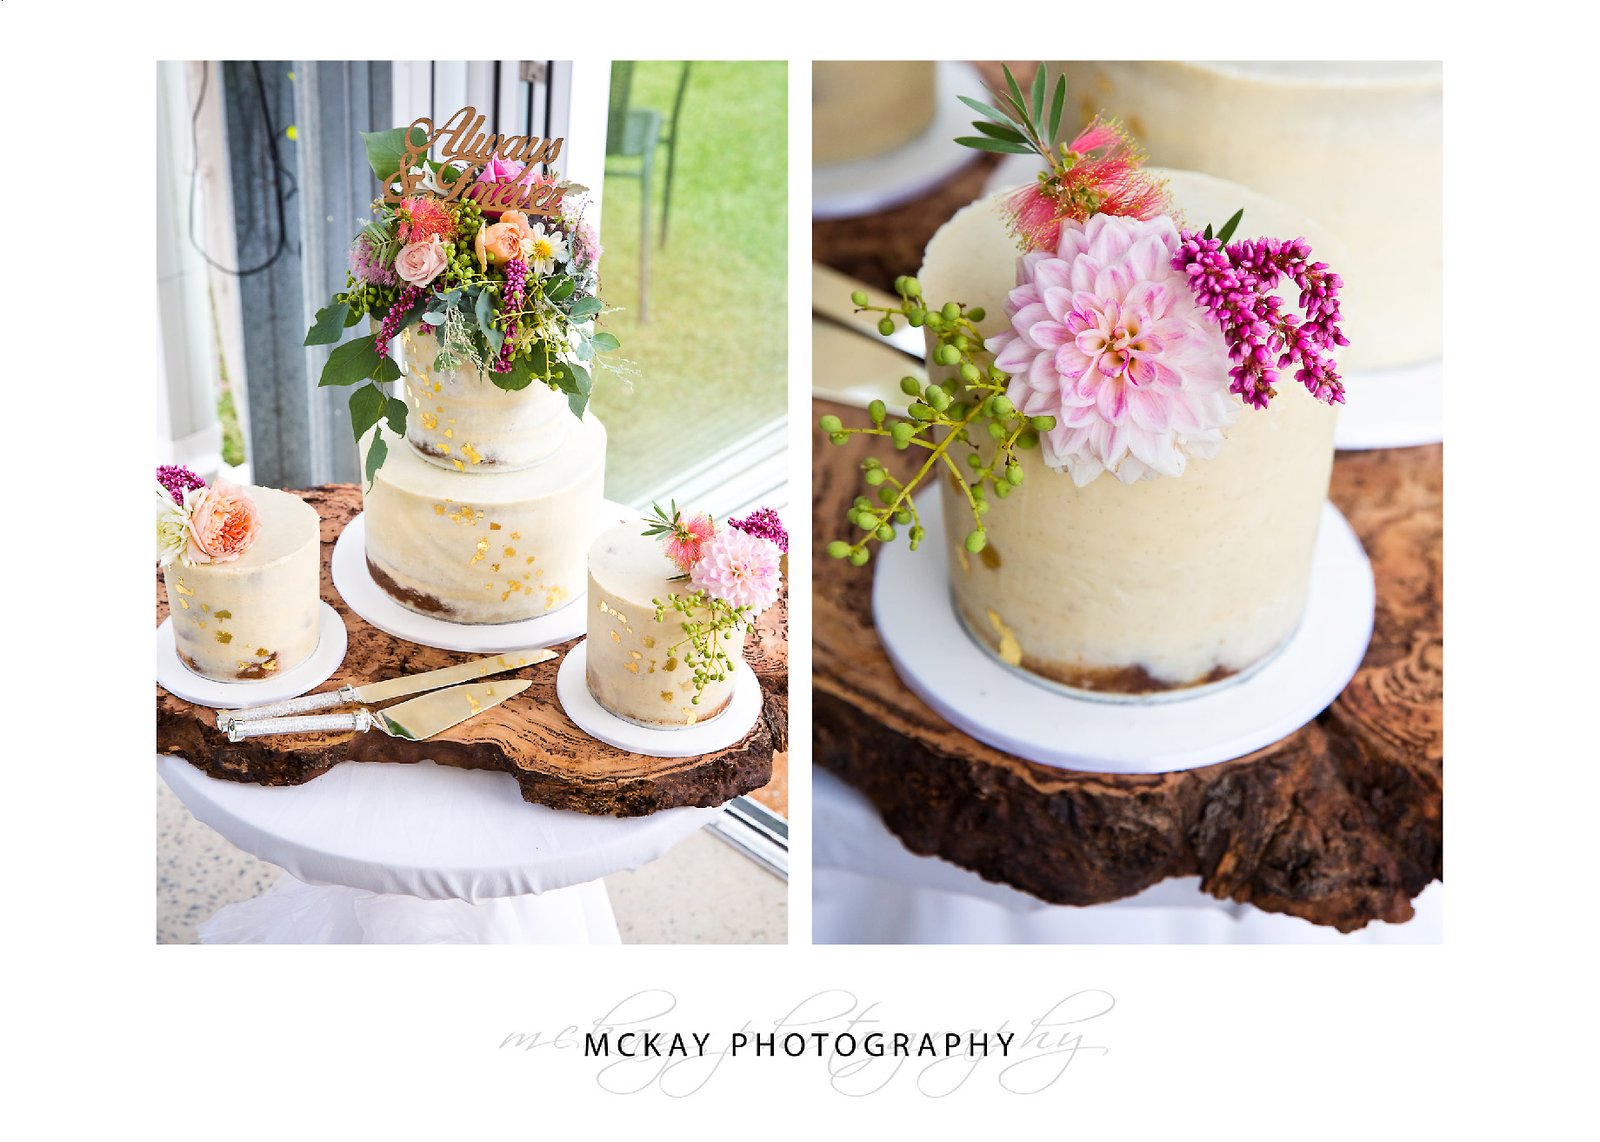 Wedding cake details photo